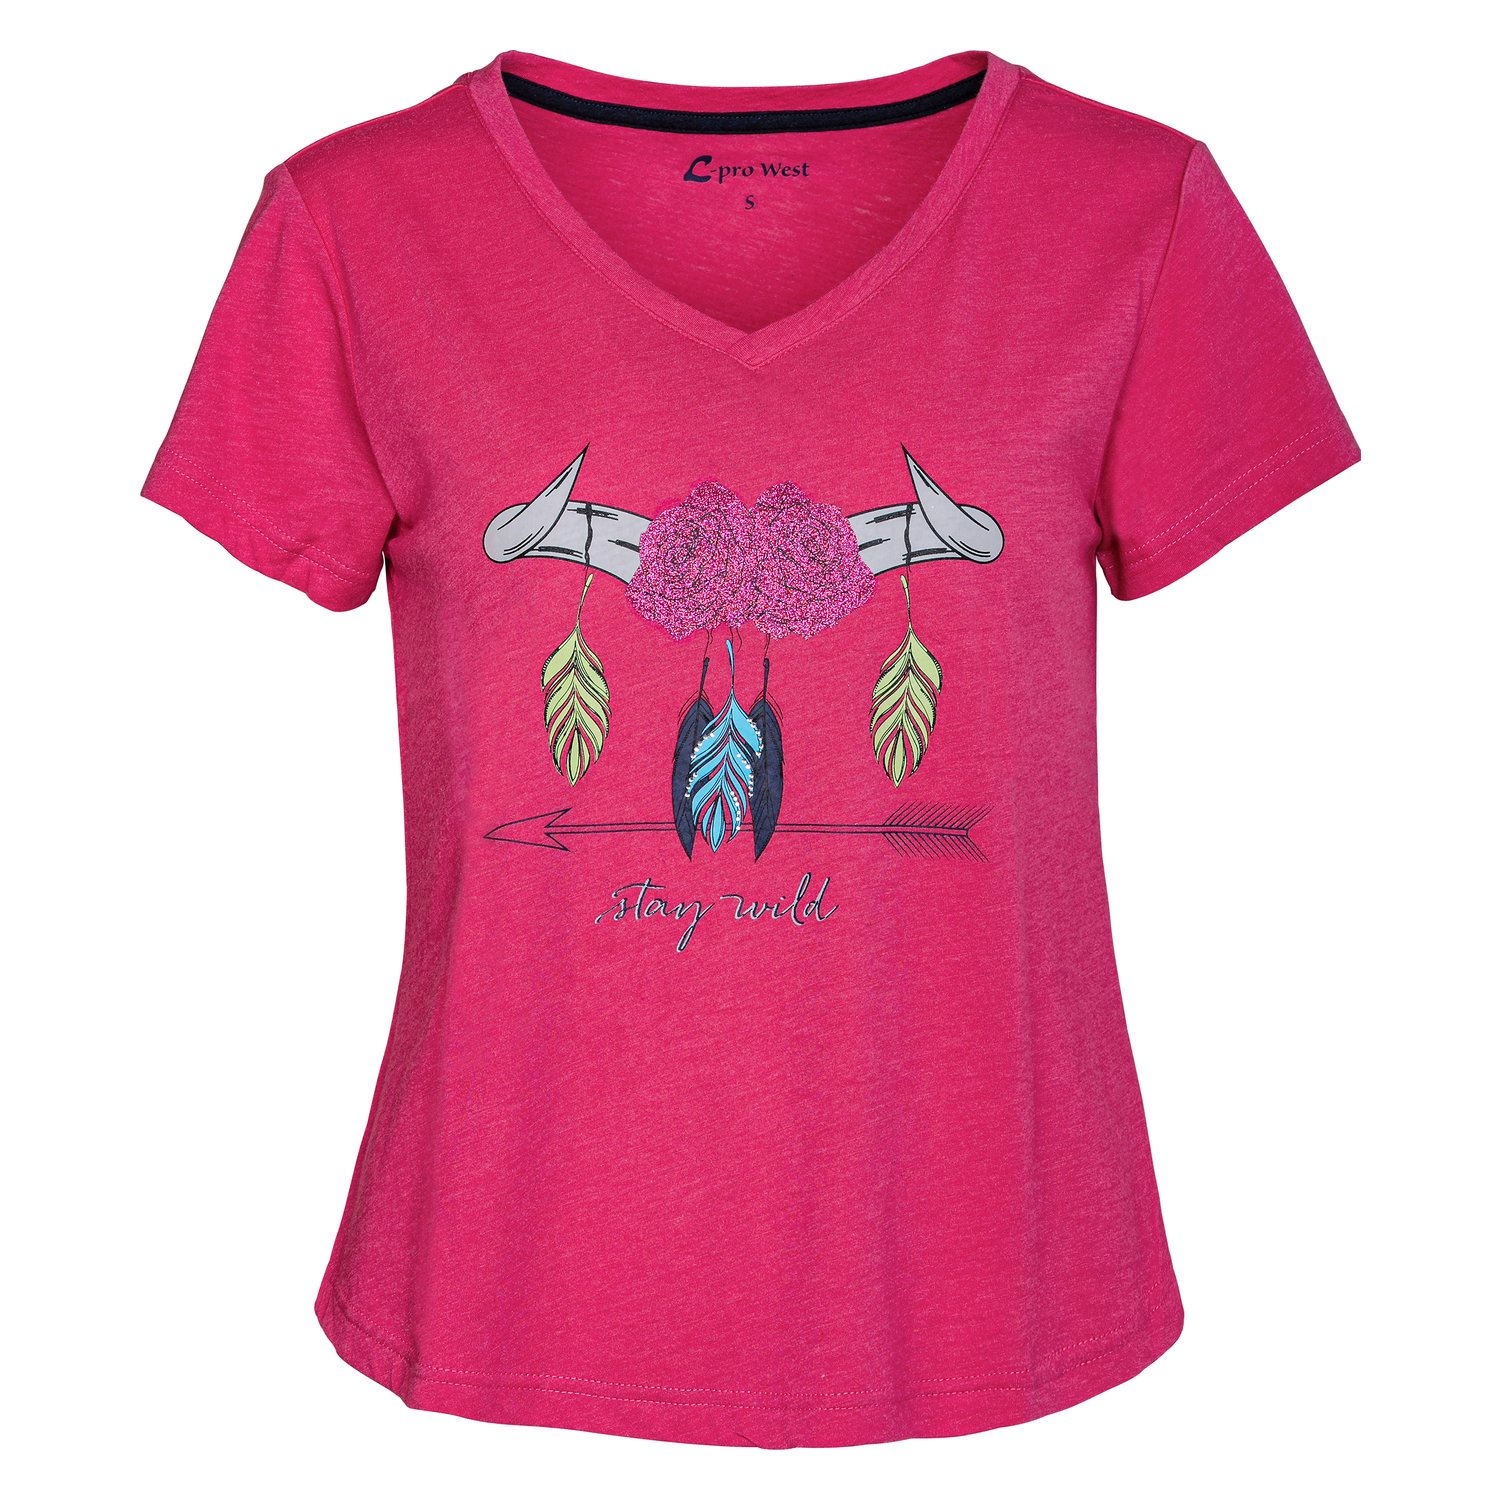 L-pro West T-Shirt berry pink | XS